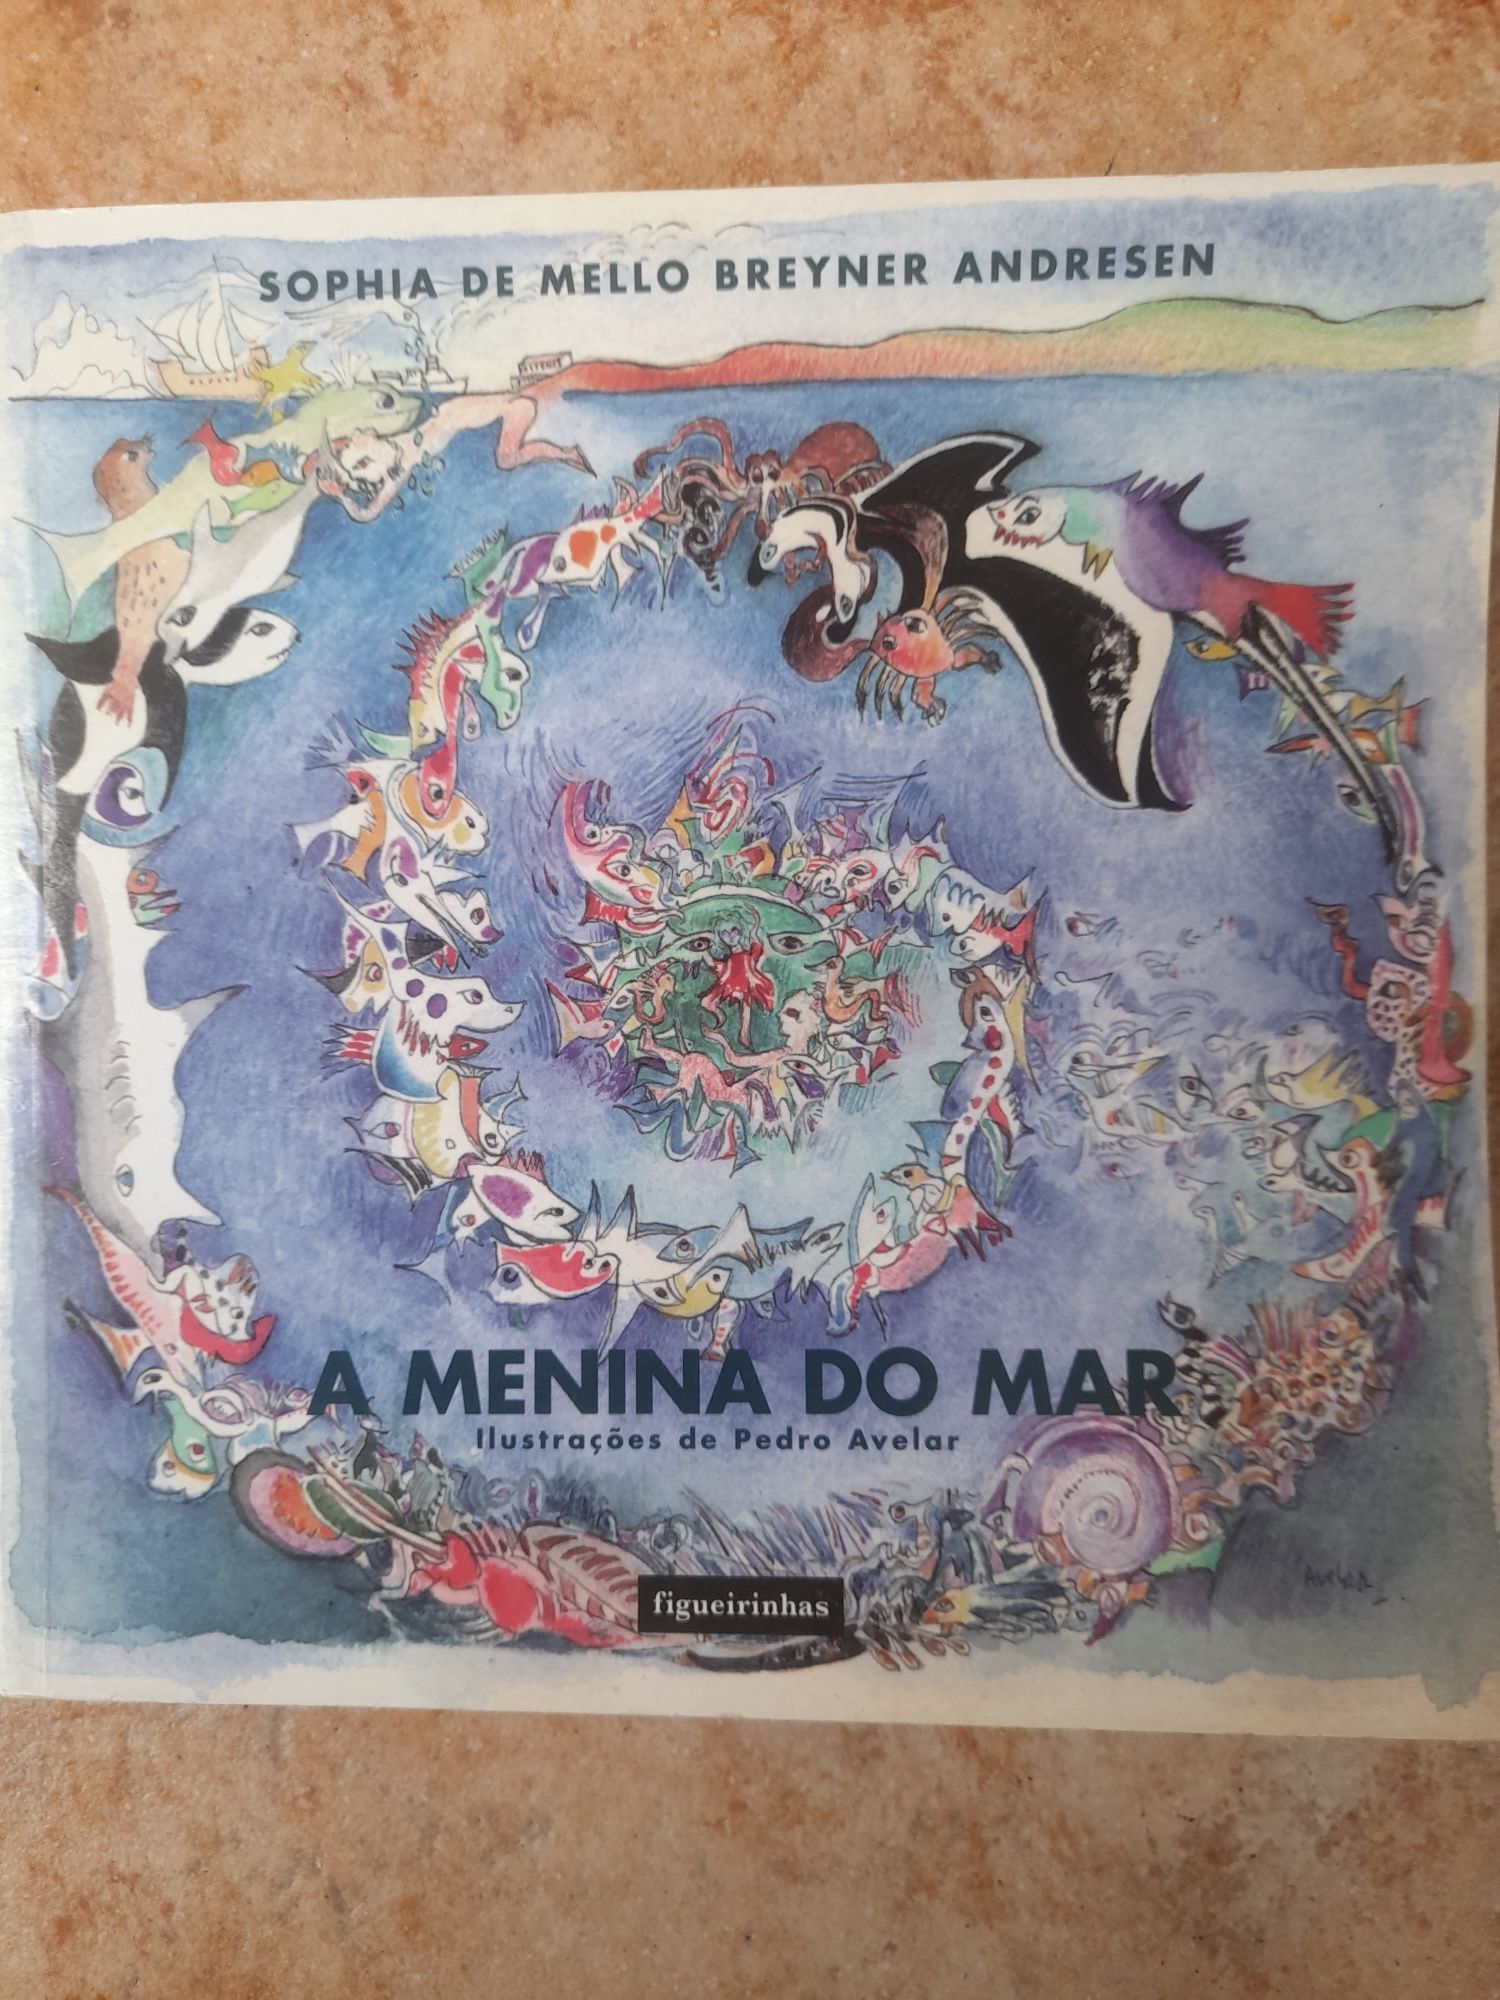 Livro "A menina do mar" - Sophia de Mello Breyner